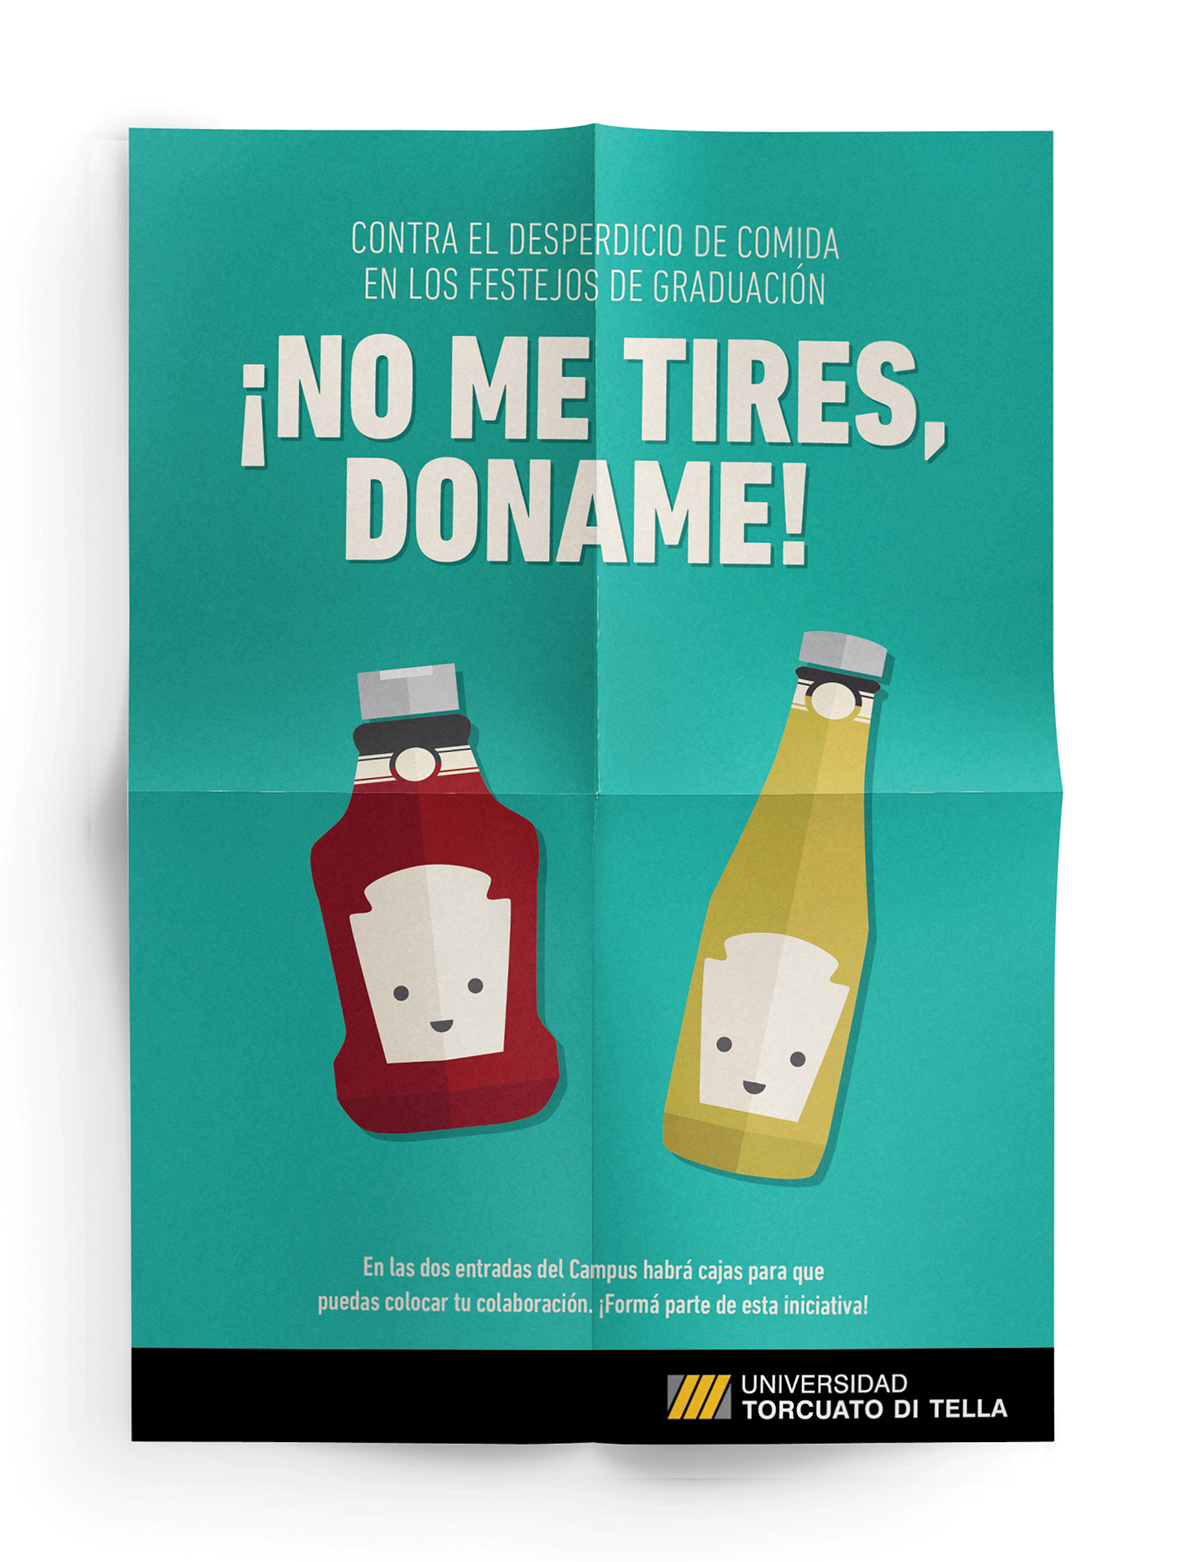 Campaña donación di tella ilustracion diseño gráfico afiche